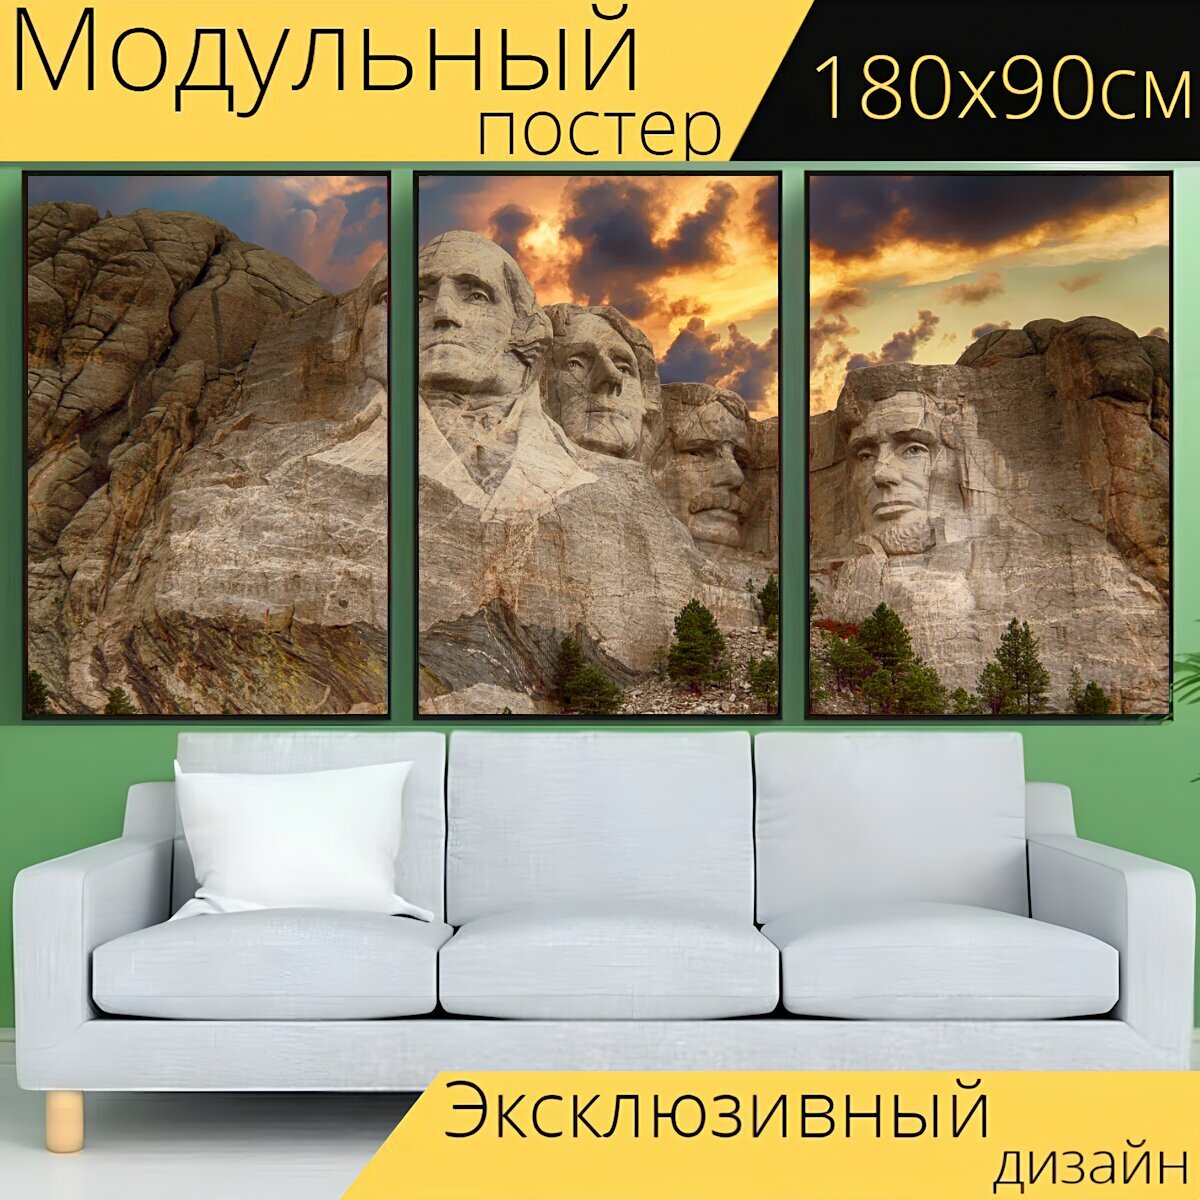 Модульный постер "Гора рашмор, памятник, америка" 180 x 90 см. для интерьера